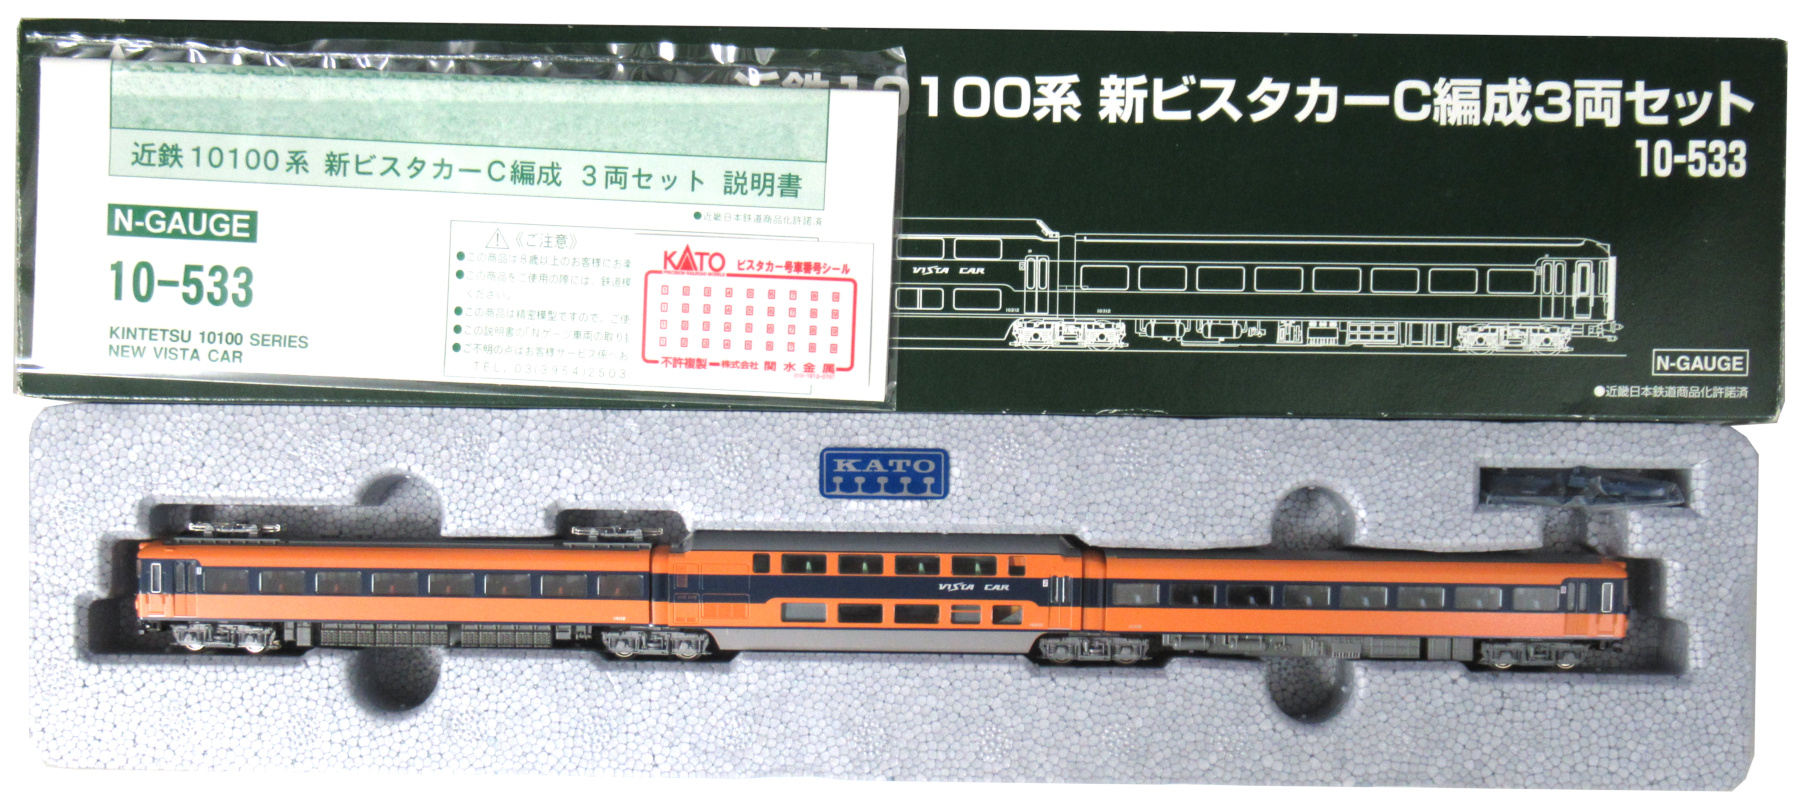 公式]鉄道模型(10-533近鉄 10100系 新ビスタカーC編成 3両セット)商品 